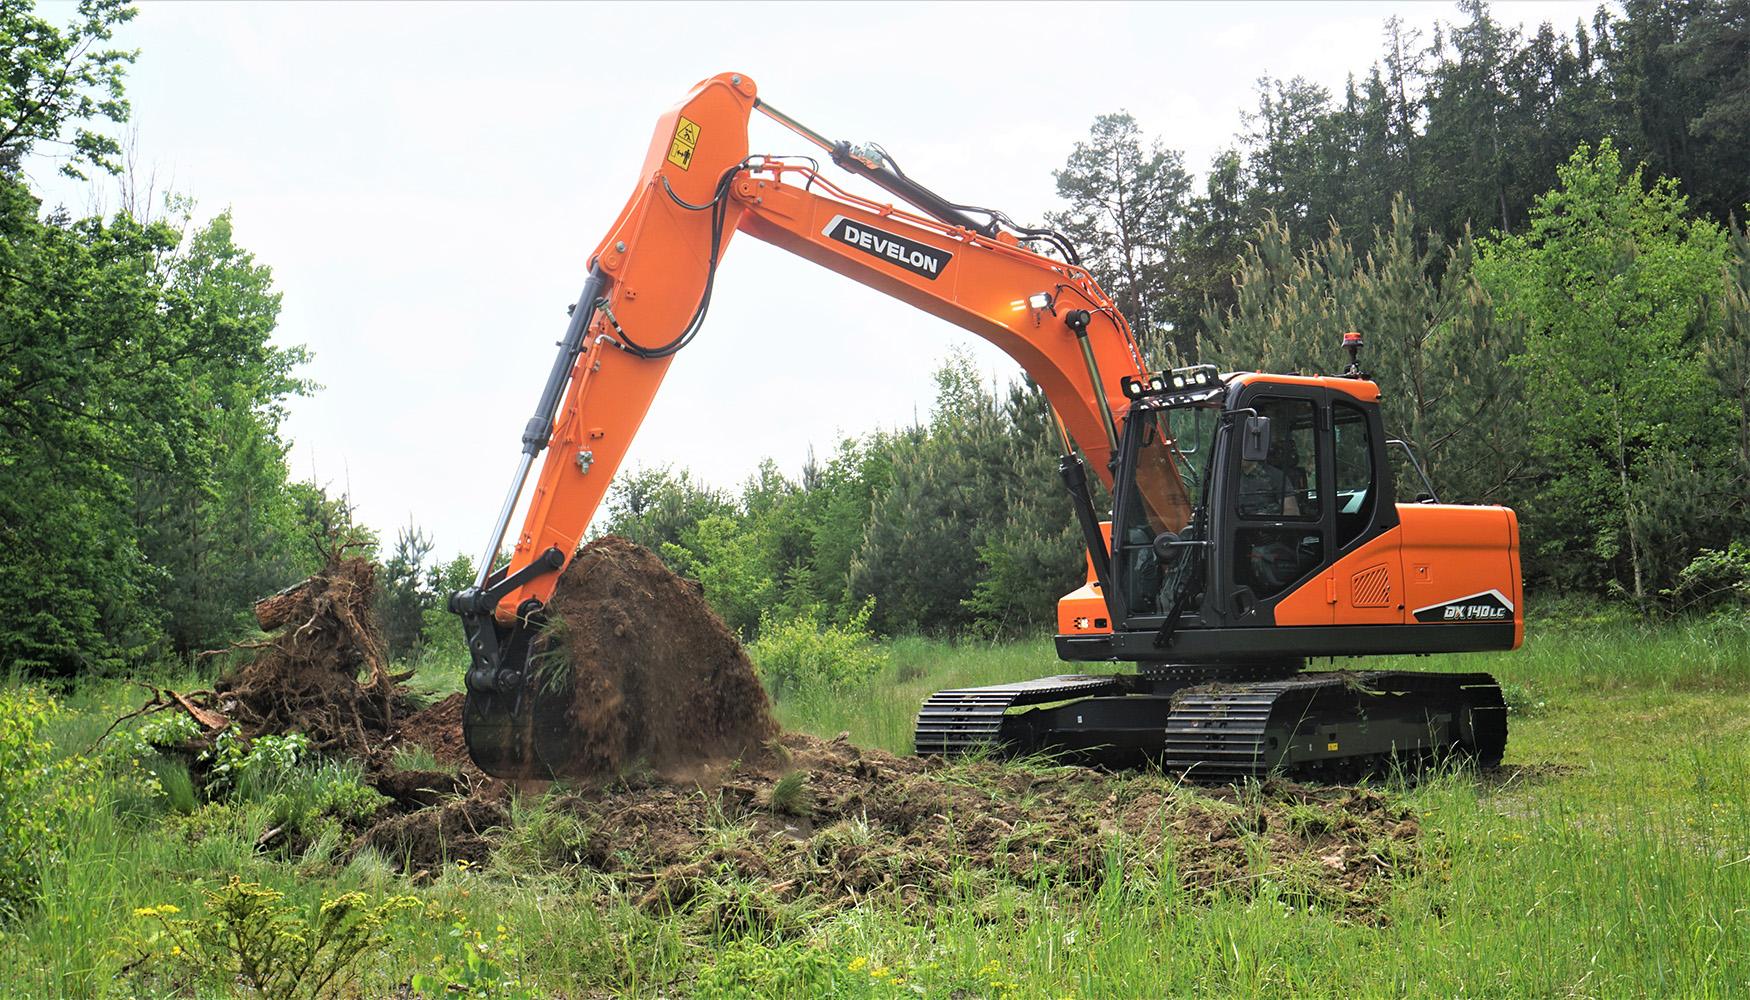 Nueva excavadora Develon DX140LC-7K